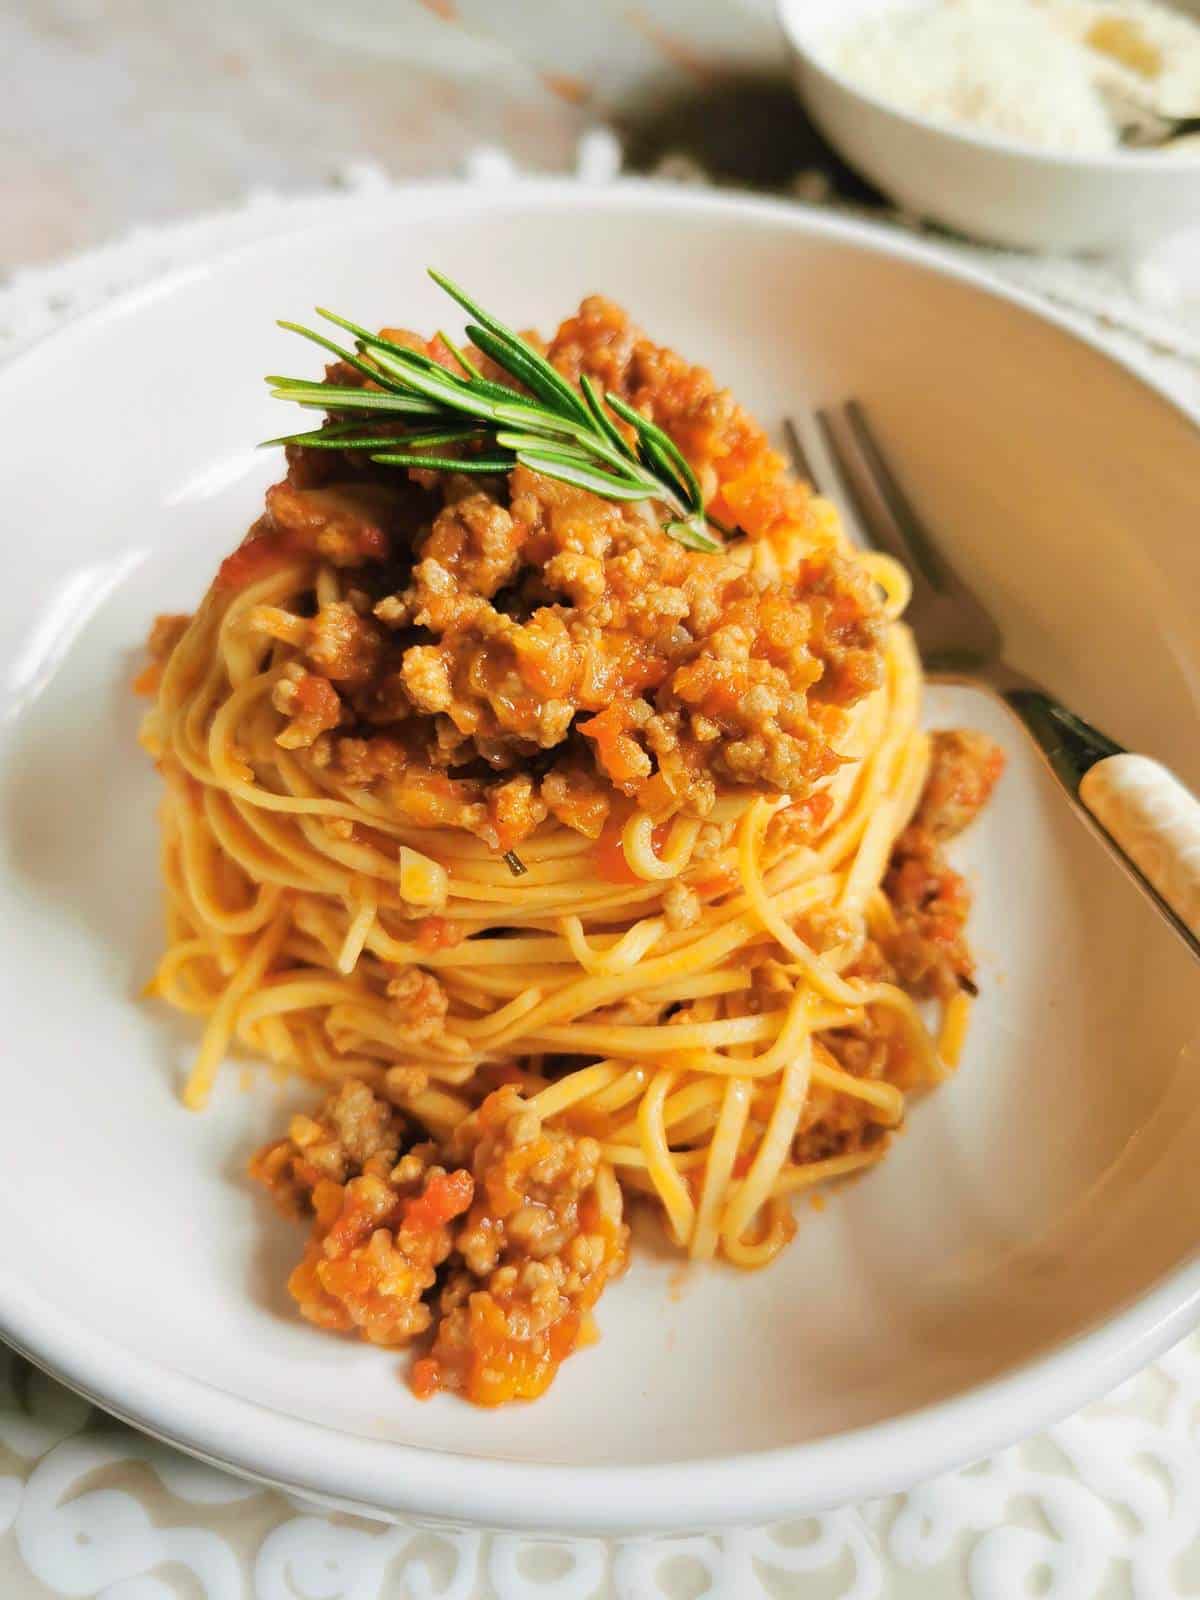 Tajarin pasta with beef sausage ragu recipe from Piedmont.